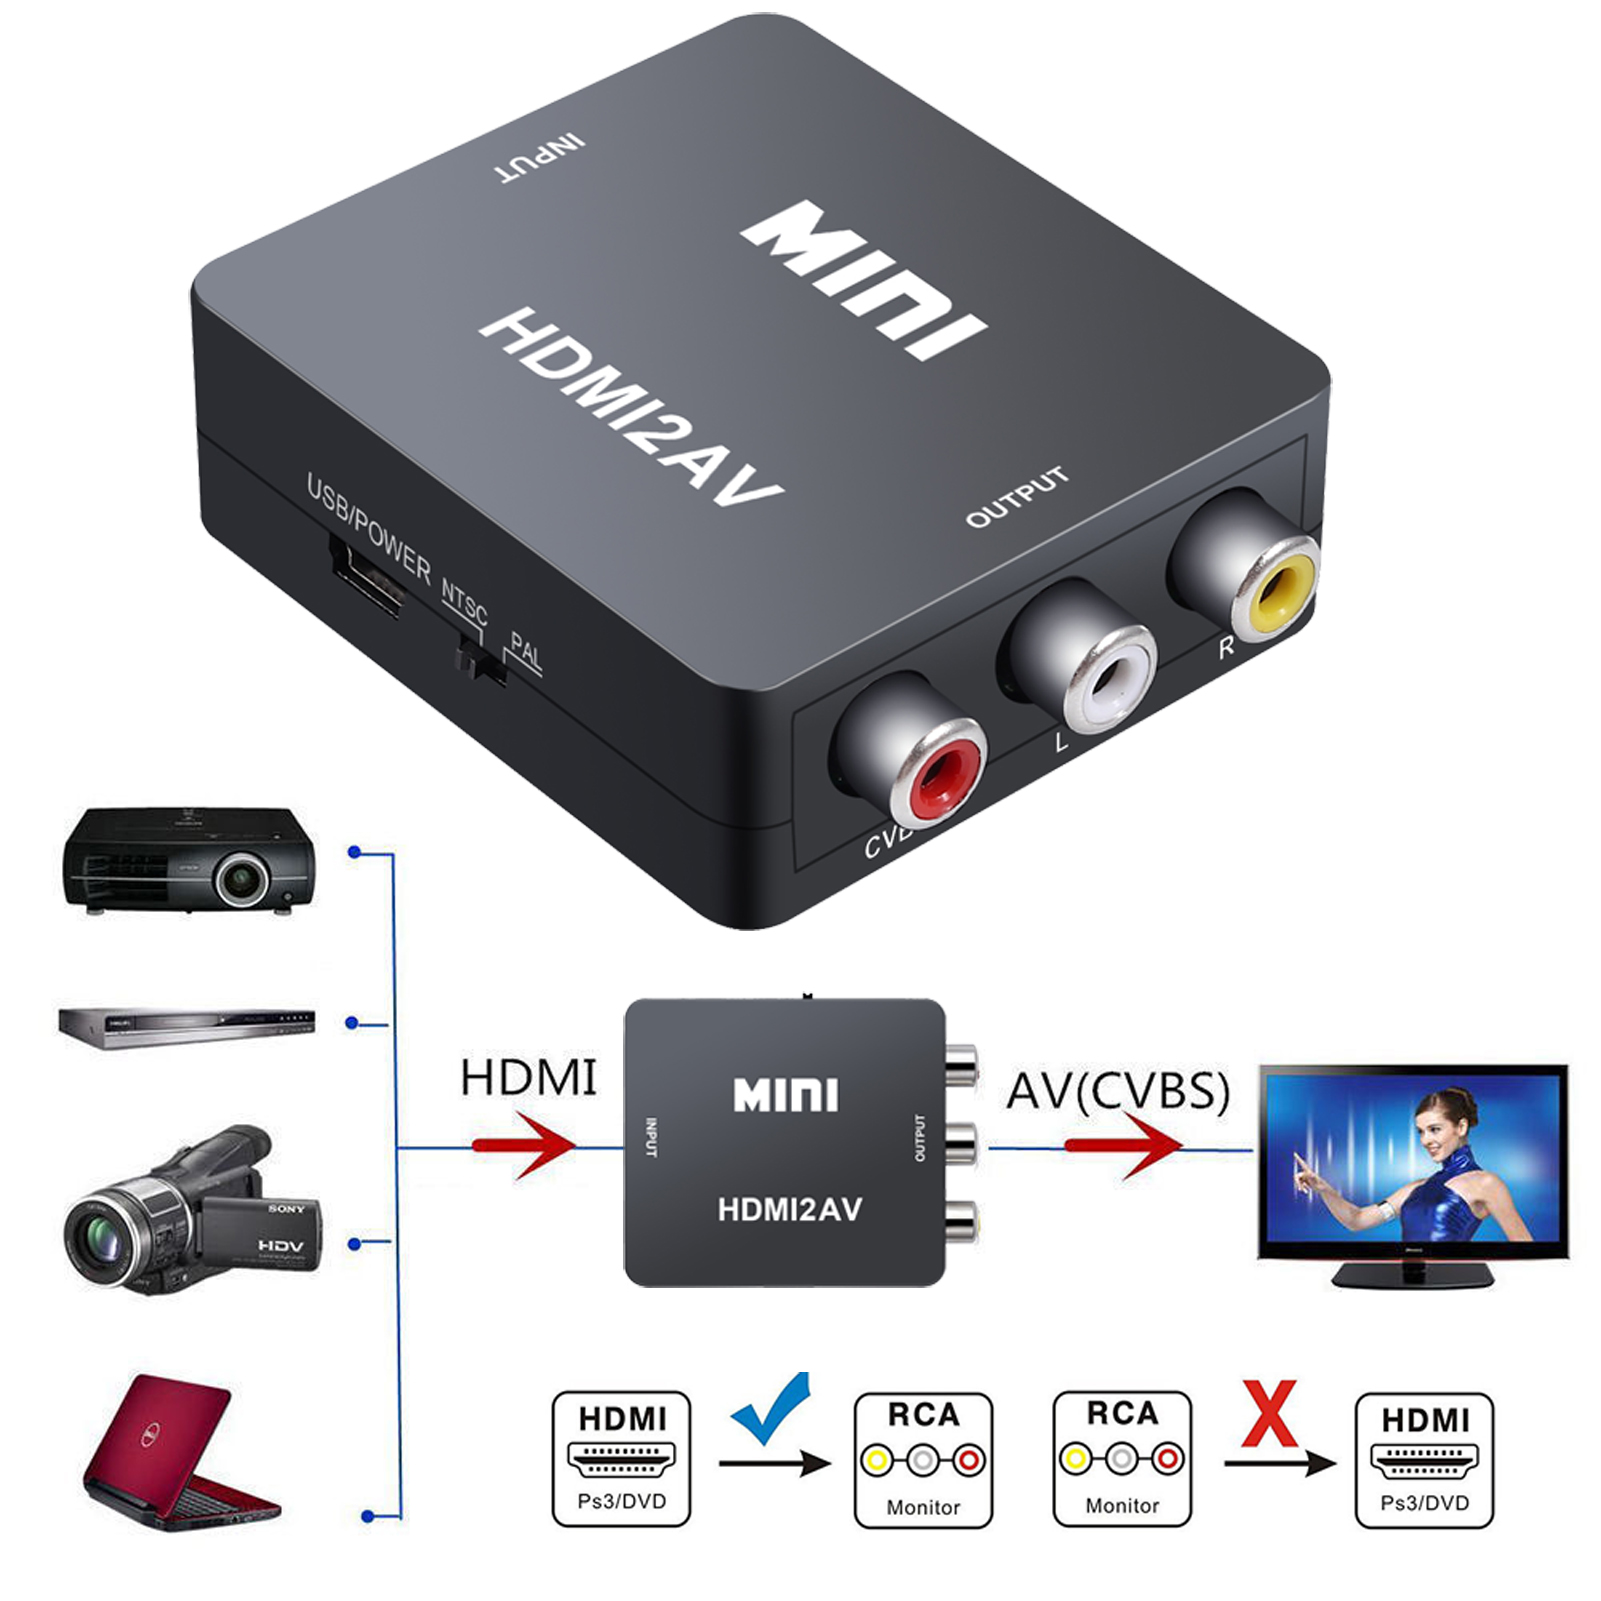 Av 02. Mini av HDMI hdmi2av CVBS, конвертер. Адаптер Mini HDMI/av 1080p Converter to 3 RCA. Адаптер h122 Mini hdmi2av 1080p Converter to 3 RCA, черный. Адаптер h123 Mini hdmi2av 1080p Converter to 3 RCA (White).